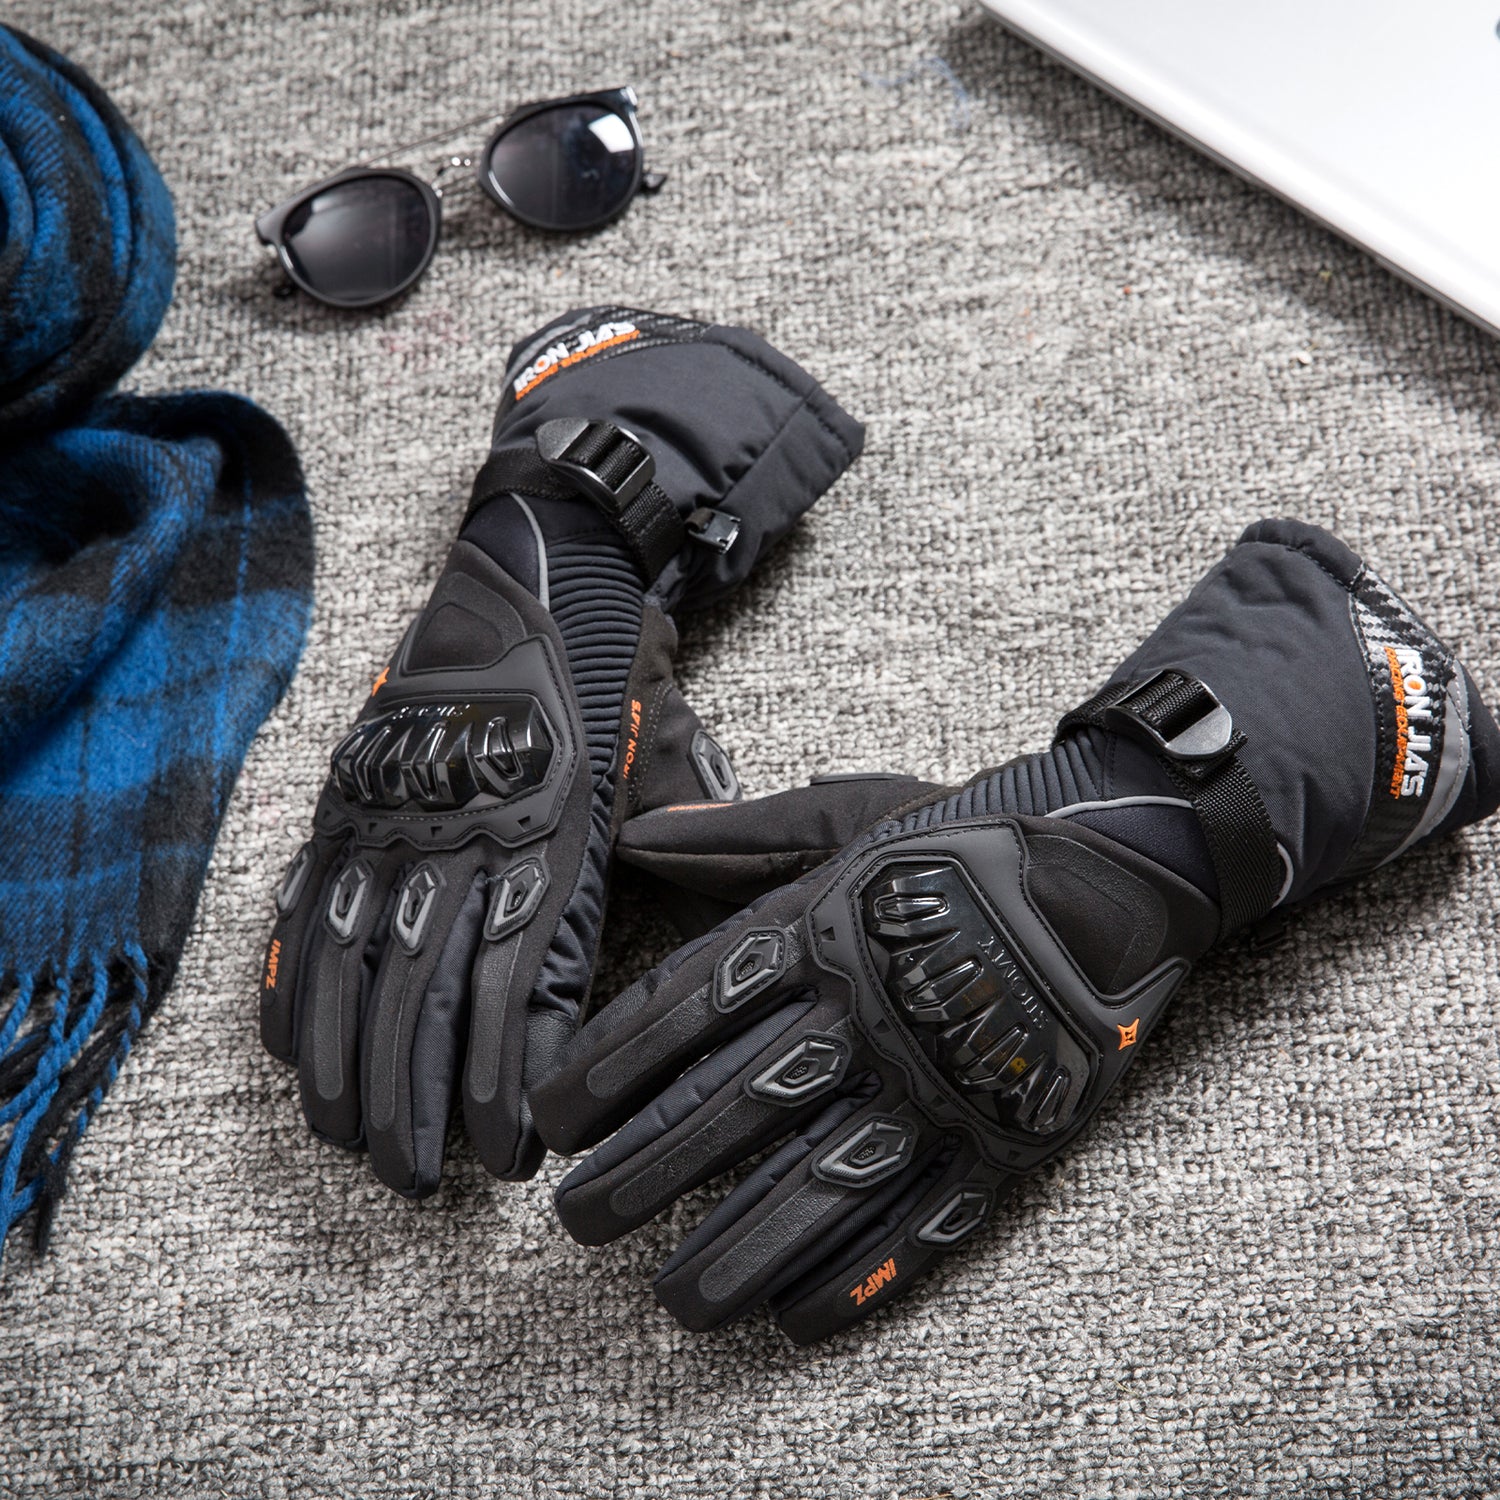 Gants chauds d'hiver coupe vent étanches tactiles gants de - Temu